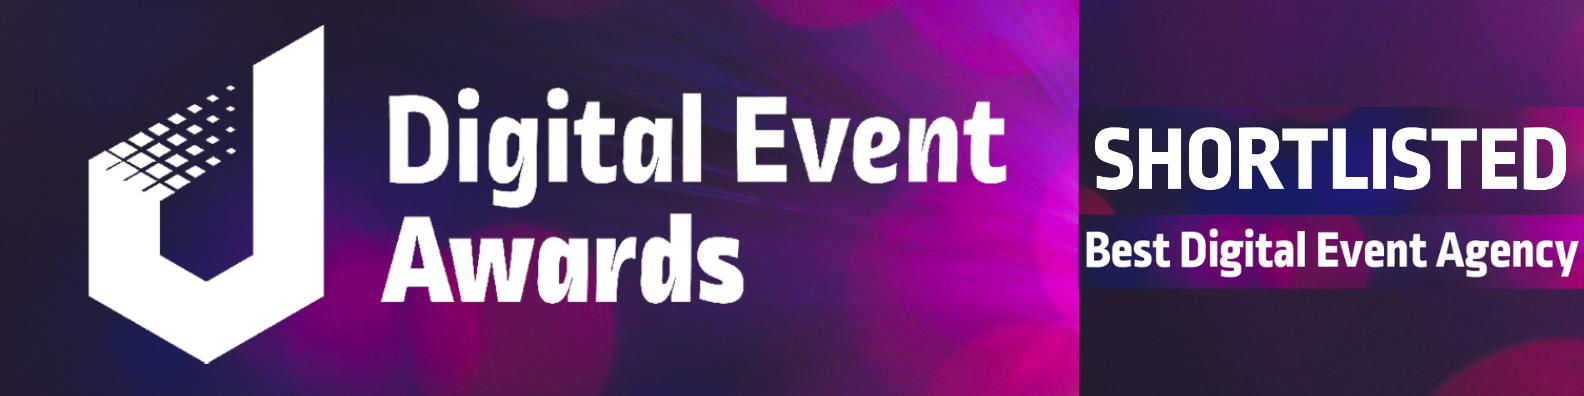 Digital Event Awards